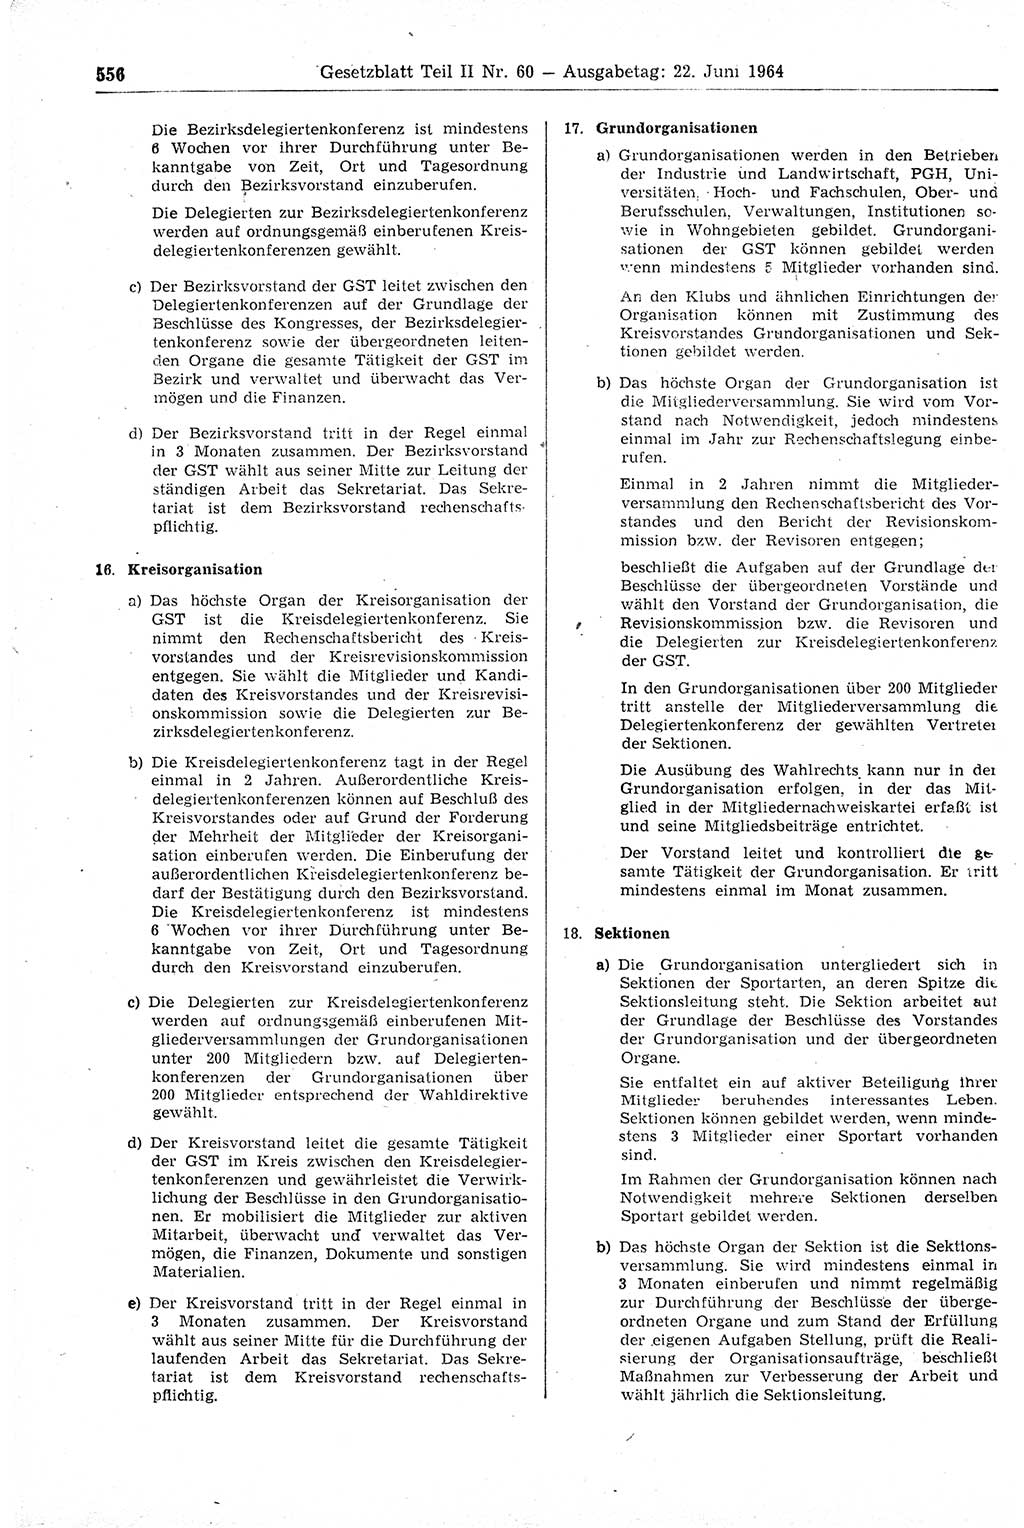 Gesetzblatt (GBl.) der Deutschen Demokratischen Republik (DDR) Teil ⅠⅠ 1964, Seite 556 (GBl. DDR ⅠⅠ 1964, S. 556)